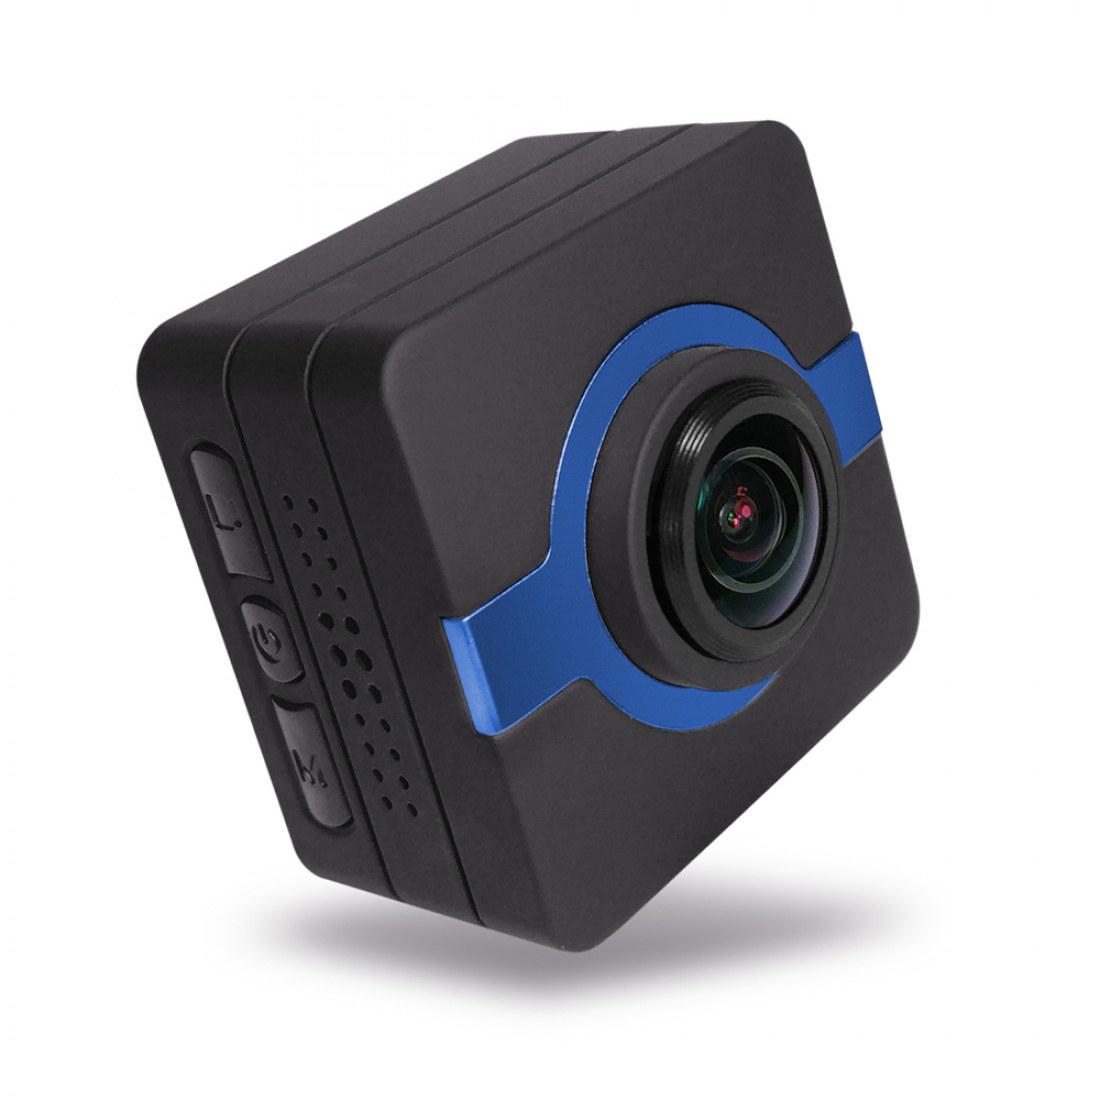 Matecam X1 לוח מחוונים לרכב מצלמה מקליט מצלמת WIFI ספורט פעולה מצלמת 4K-HI Ultra HD עמיד למים DV מצלמת וידאו 16MP 160 מעלות זווית רחבה WIFI/חיישן ג'יירו/ייצוב ג'ירו/זיהוי תנועה/שלט רחוק RC מצלמת אופניים קסדת מצלמת חיל הים